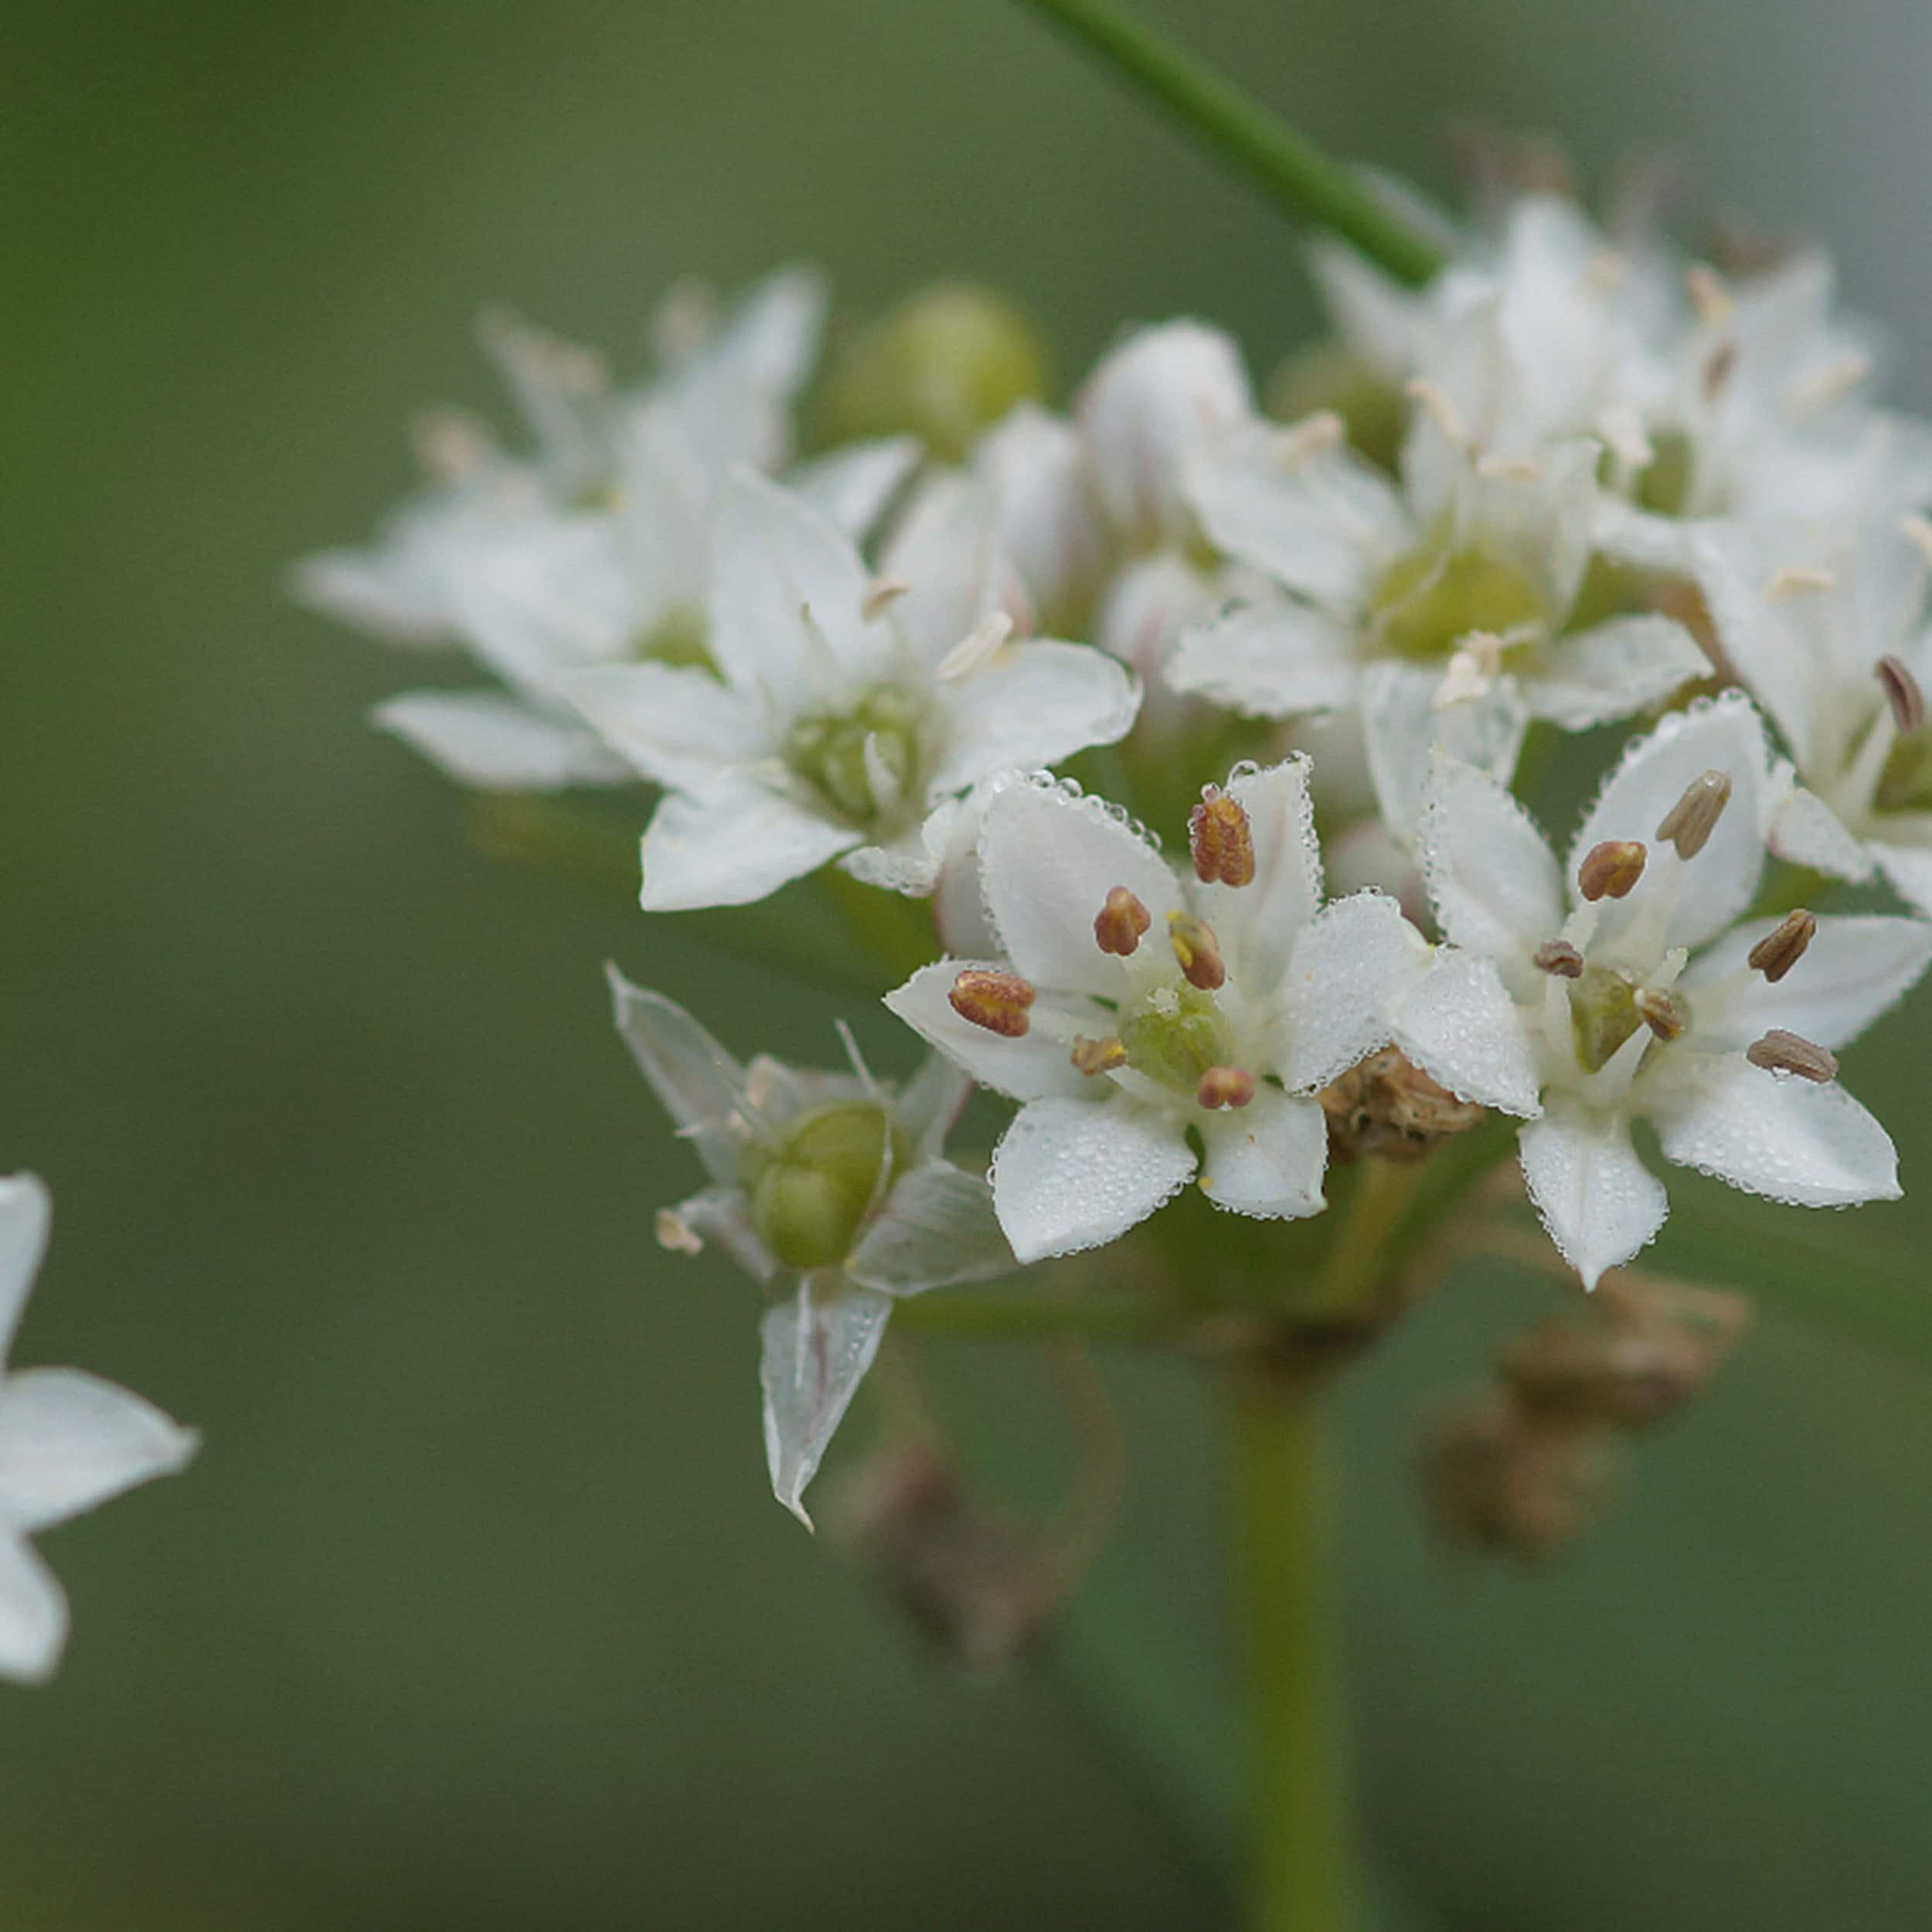 Allium tuberosum - Schnittknoblauch